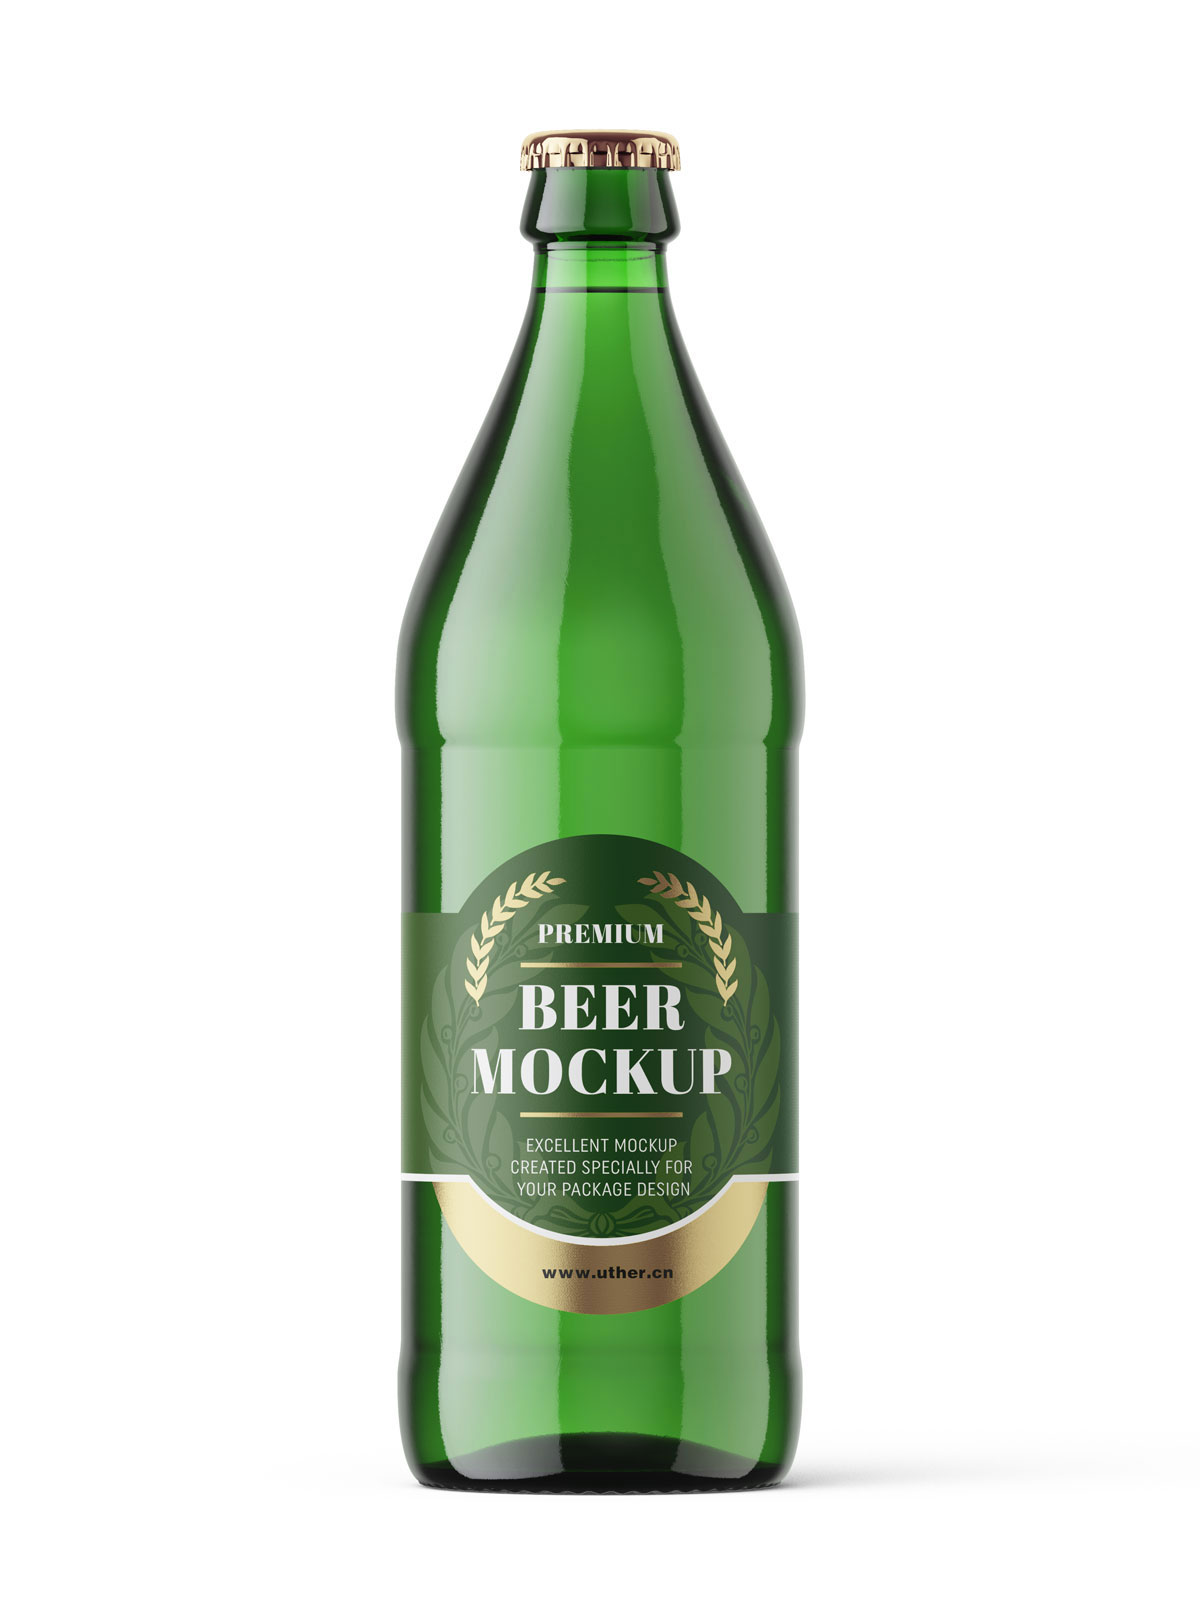 高质量绿色啤酒瓶PSD样机模型beer bottle mockup